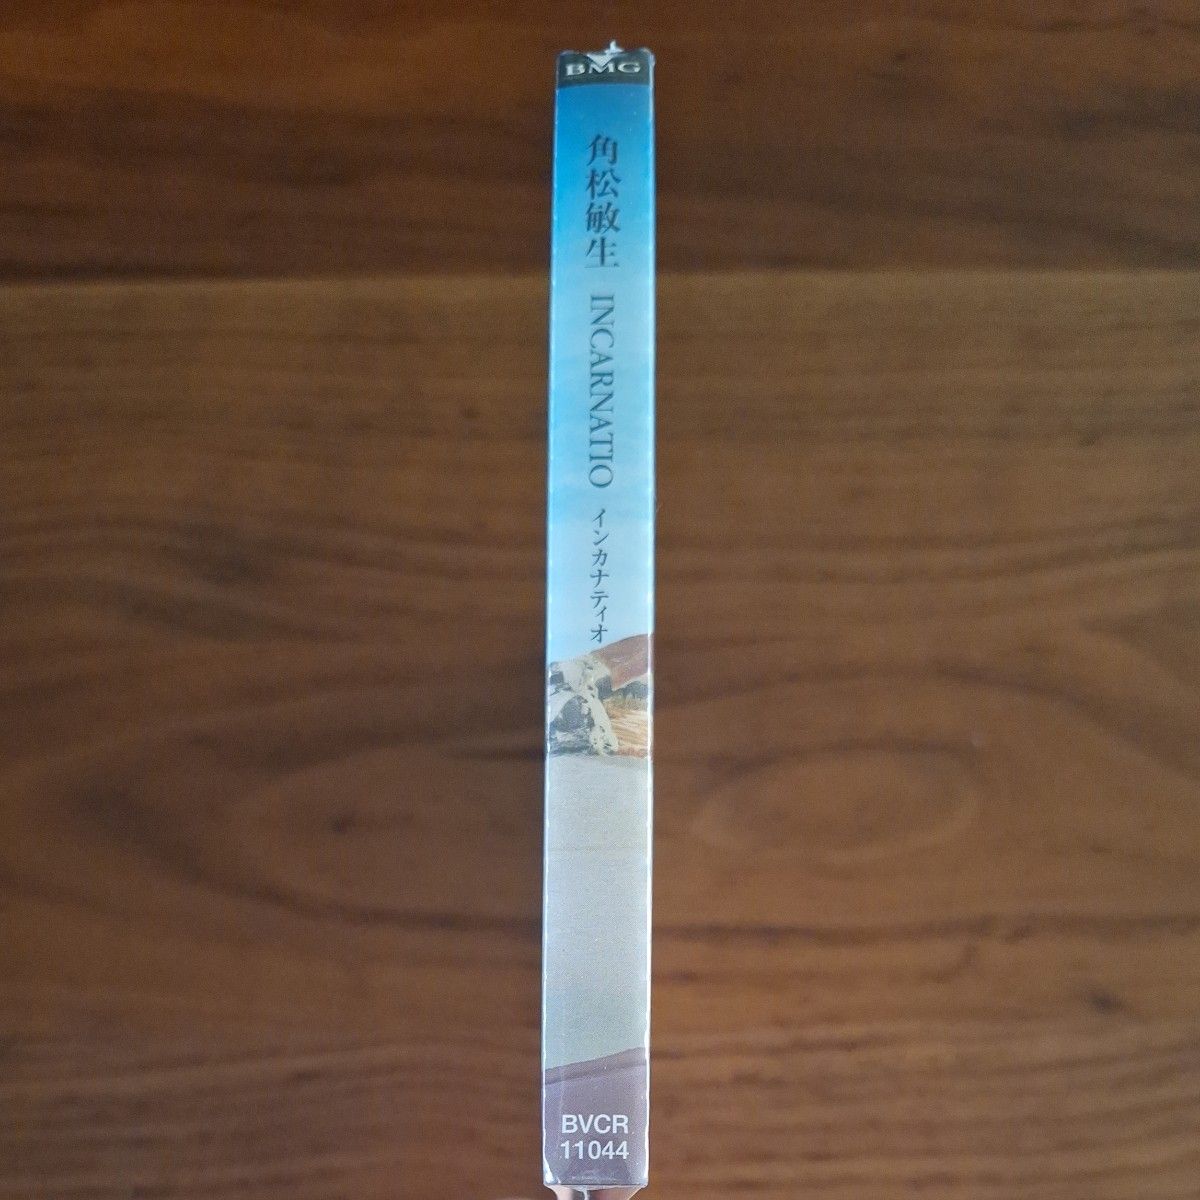 角松敏生 CD『INCARNATIO(インカナティオ)』[初回生産限定盤・デジパック仕様]【SAMPLE】《未開封》